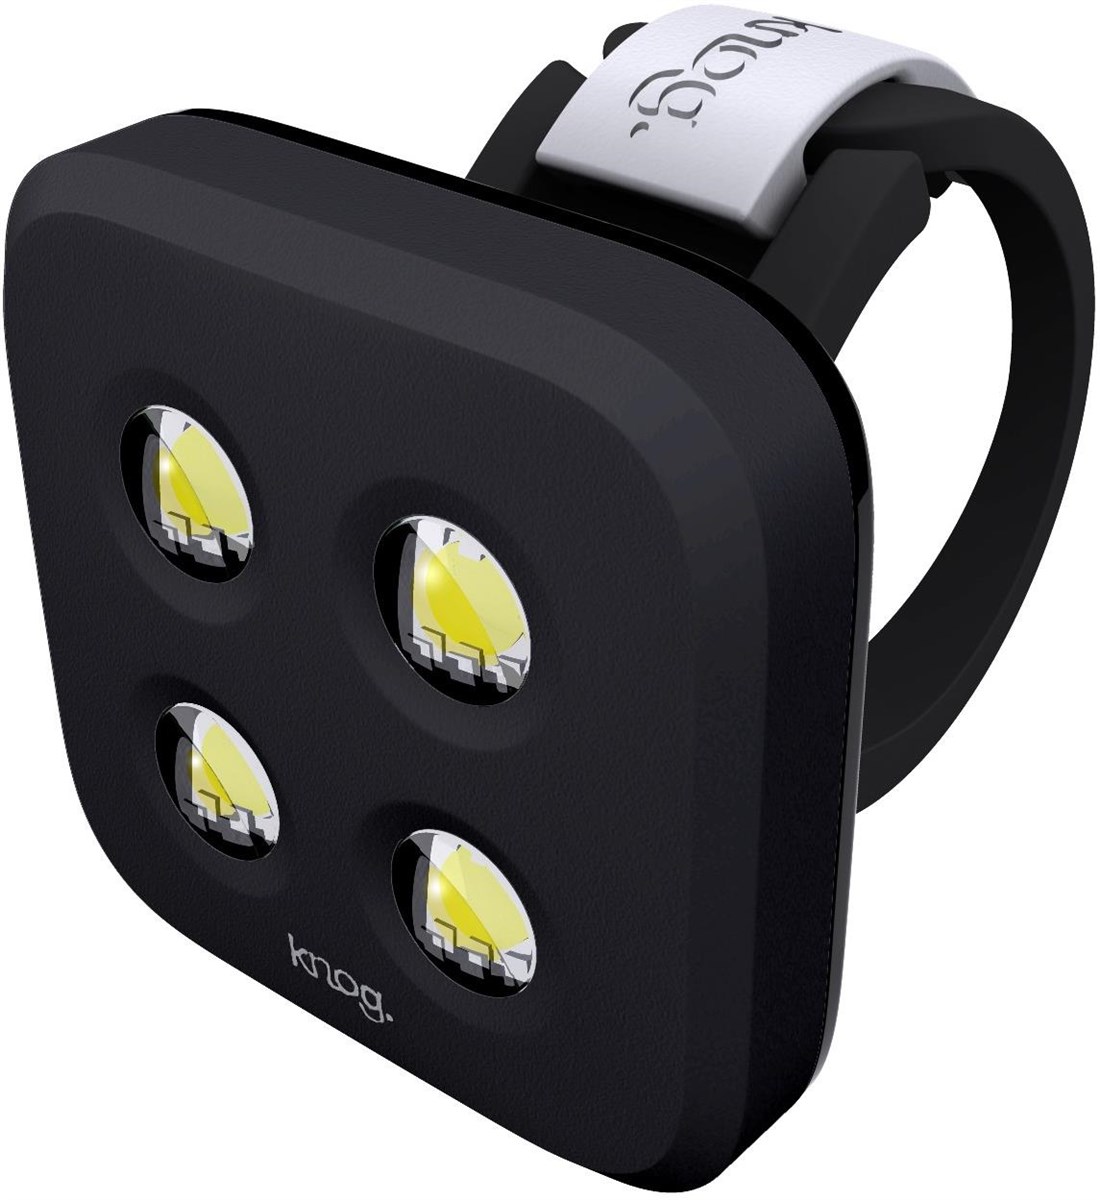 Knog Blinder 4 LED USB Rechargeable Front Light product image